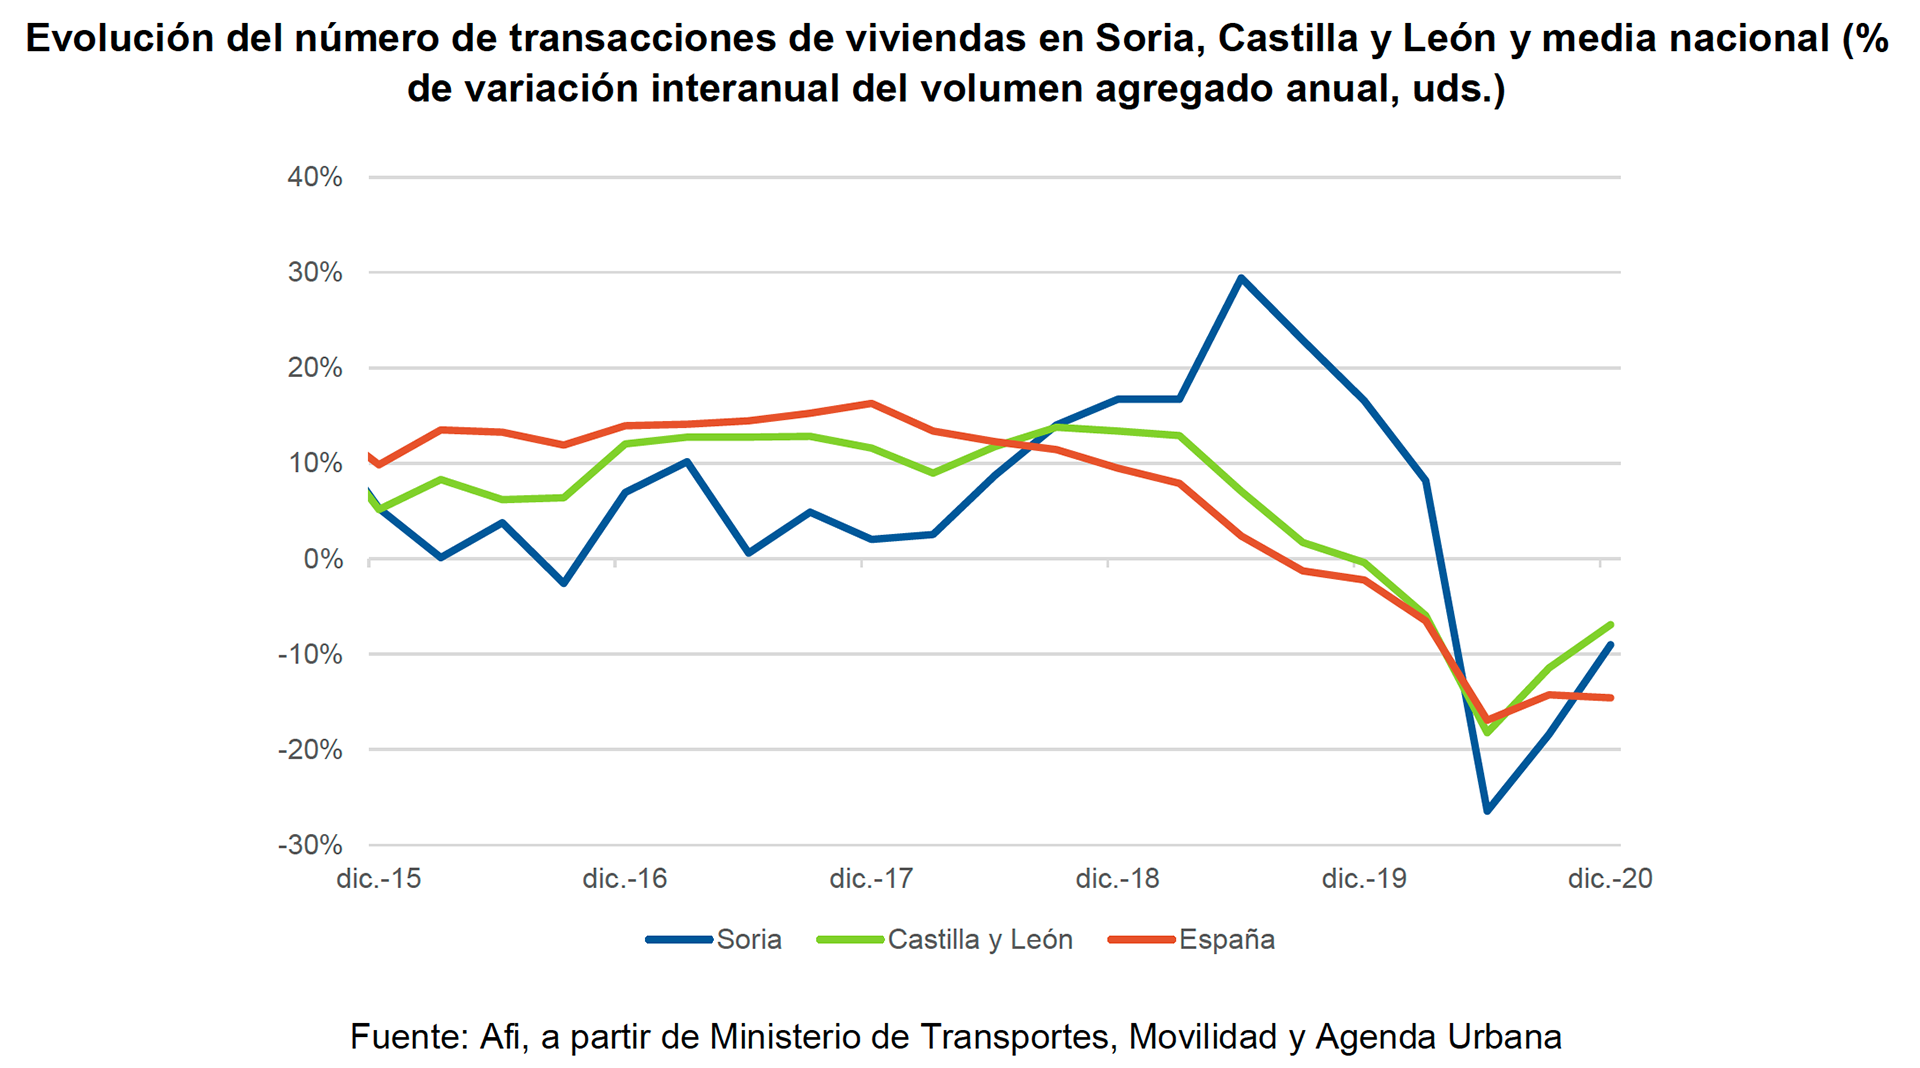 Grafica evolución mercado inmobiiario en Castilla y León comparadado con el Estatal